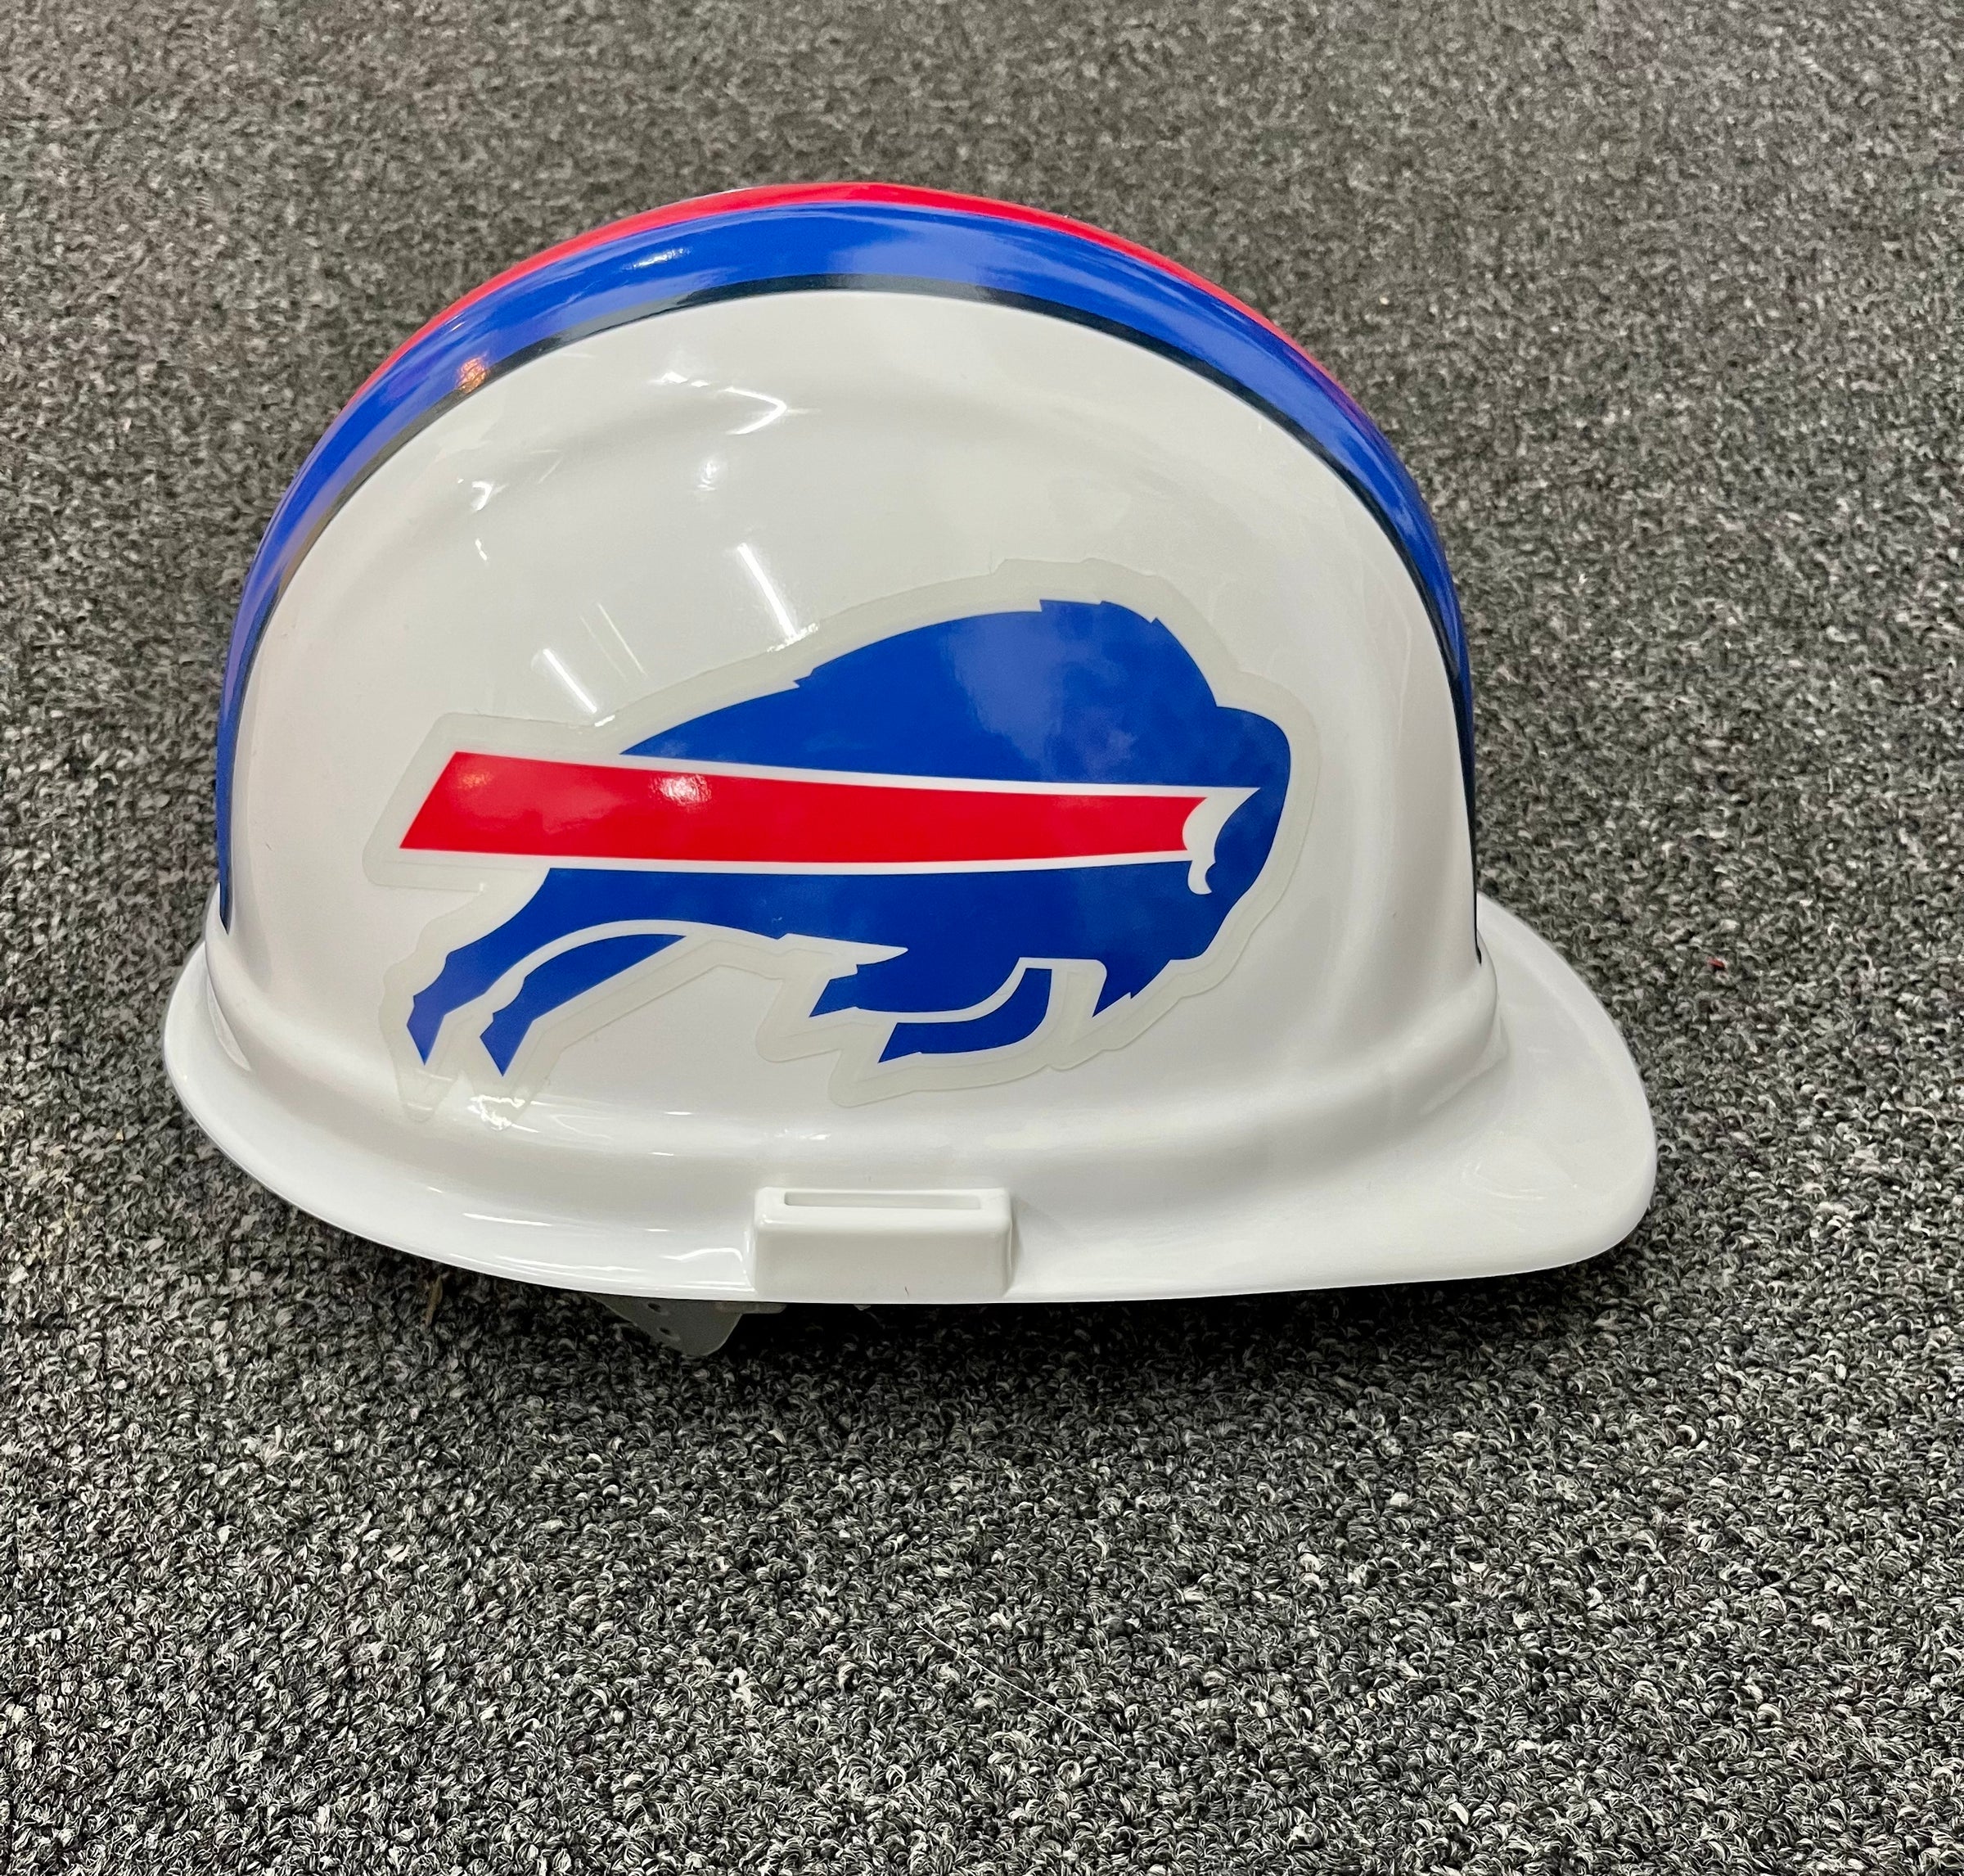 NFL Buffalo Bills Bling Chrome License Plate Frame